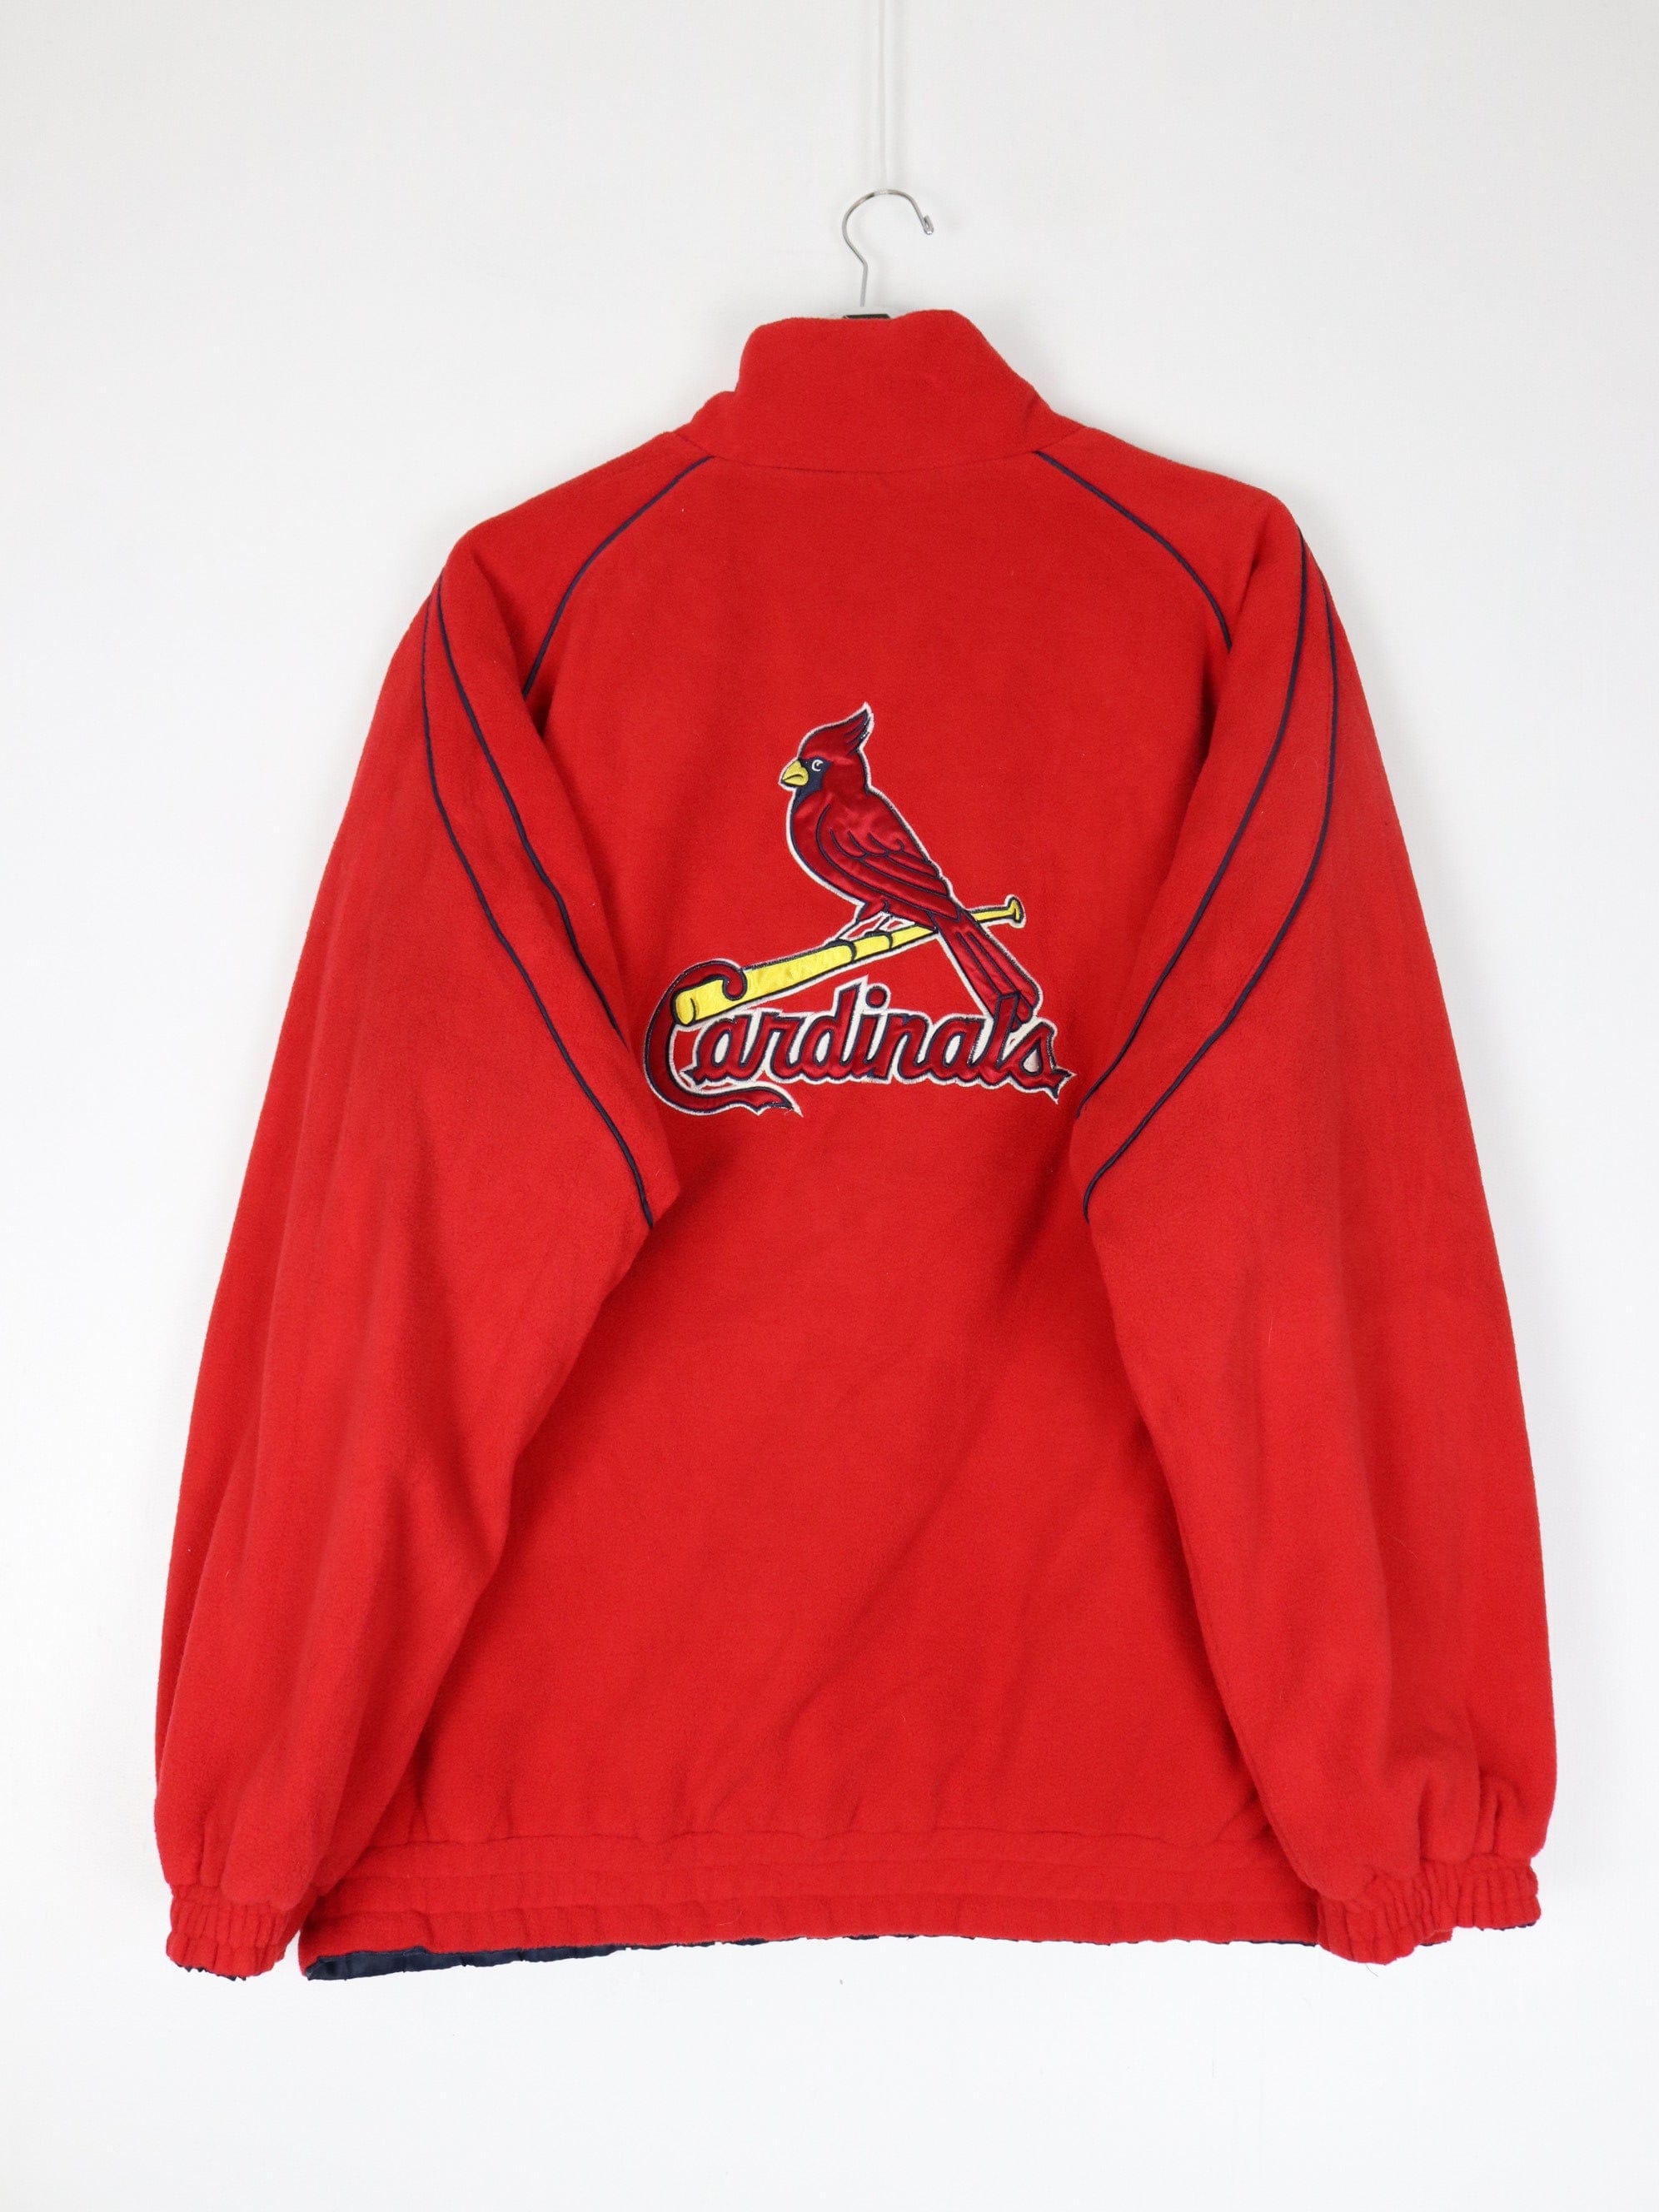 Mens St. Louis Cardinals Jacket, Cardinals Mens Jackets, MLB